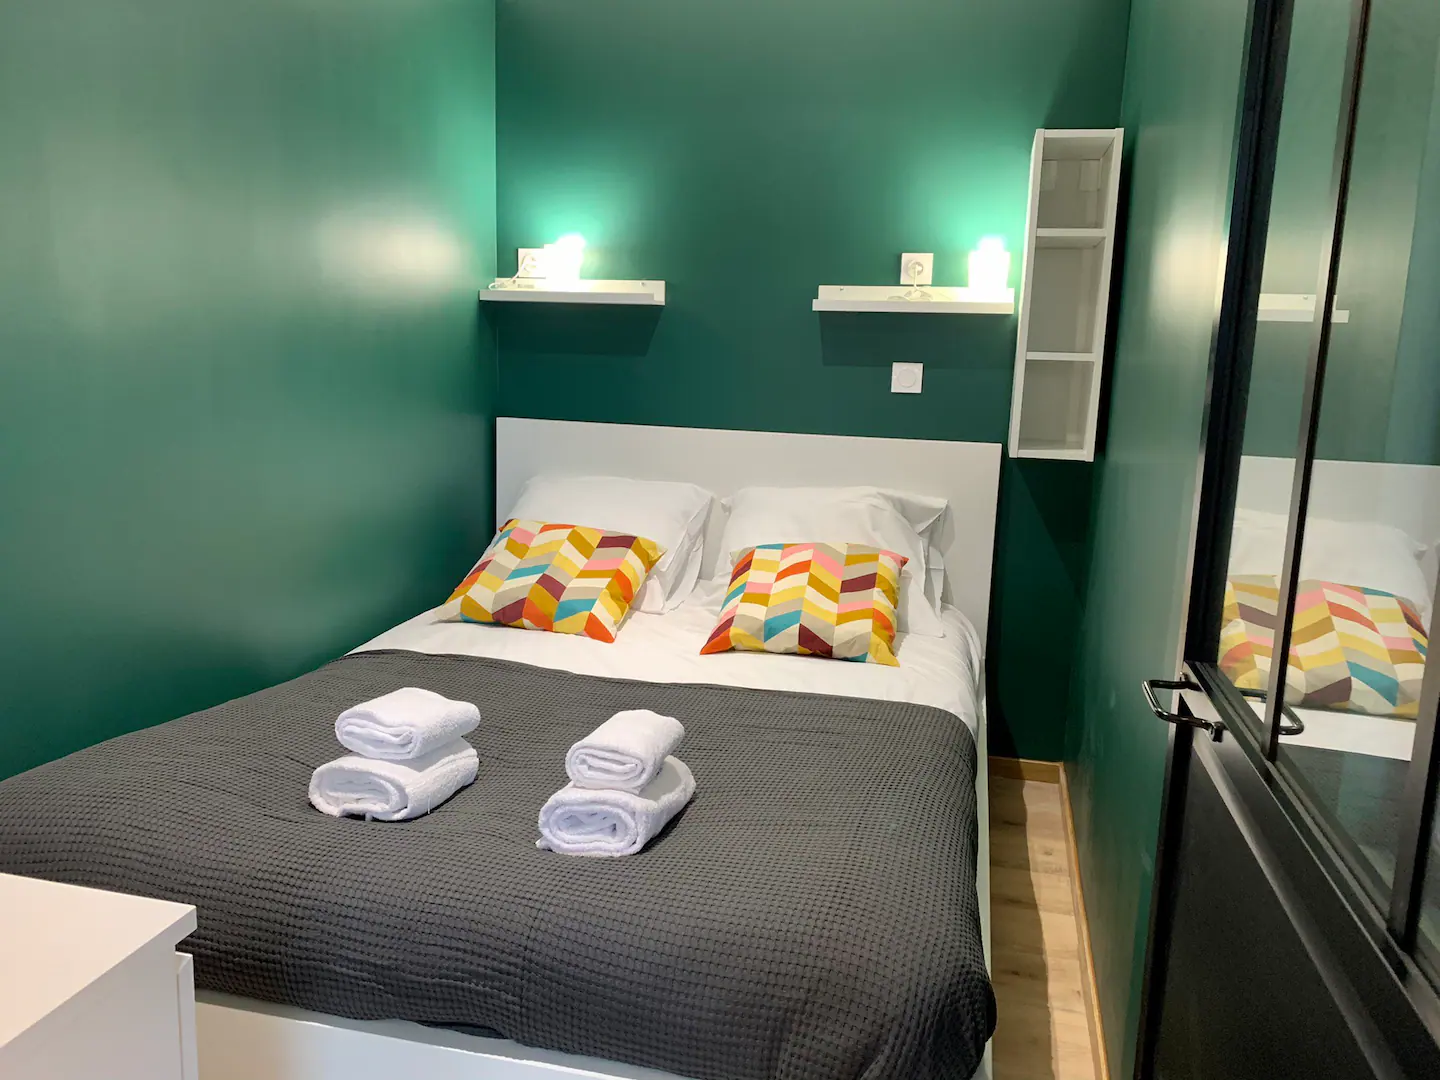 rennes-host-airbnb-conciergerie-le-glaz-appartement-mail-francois-mitterand-5